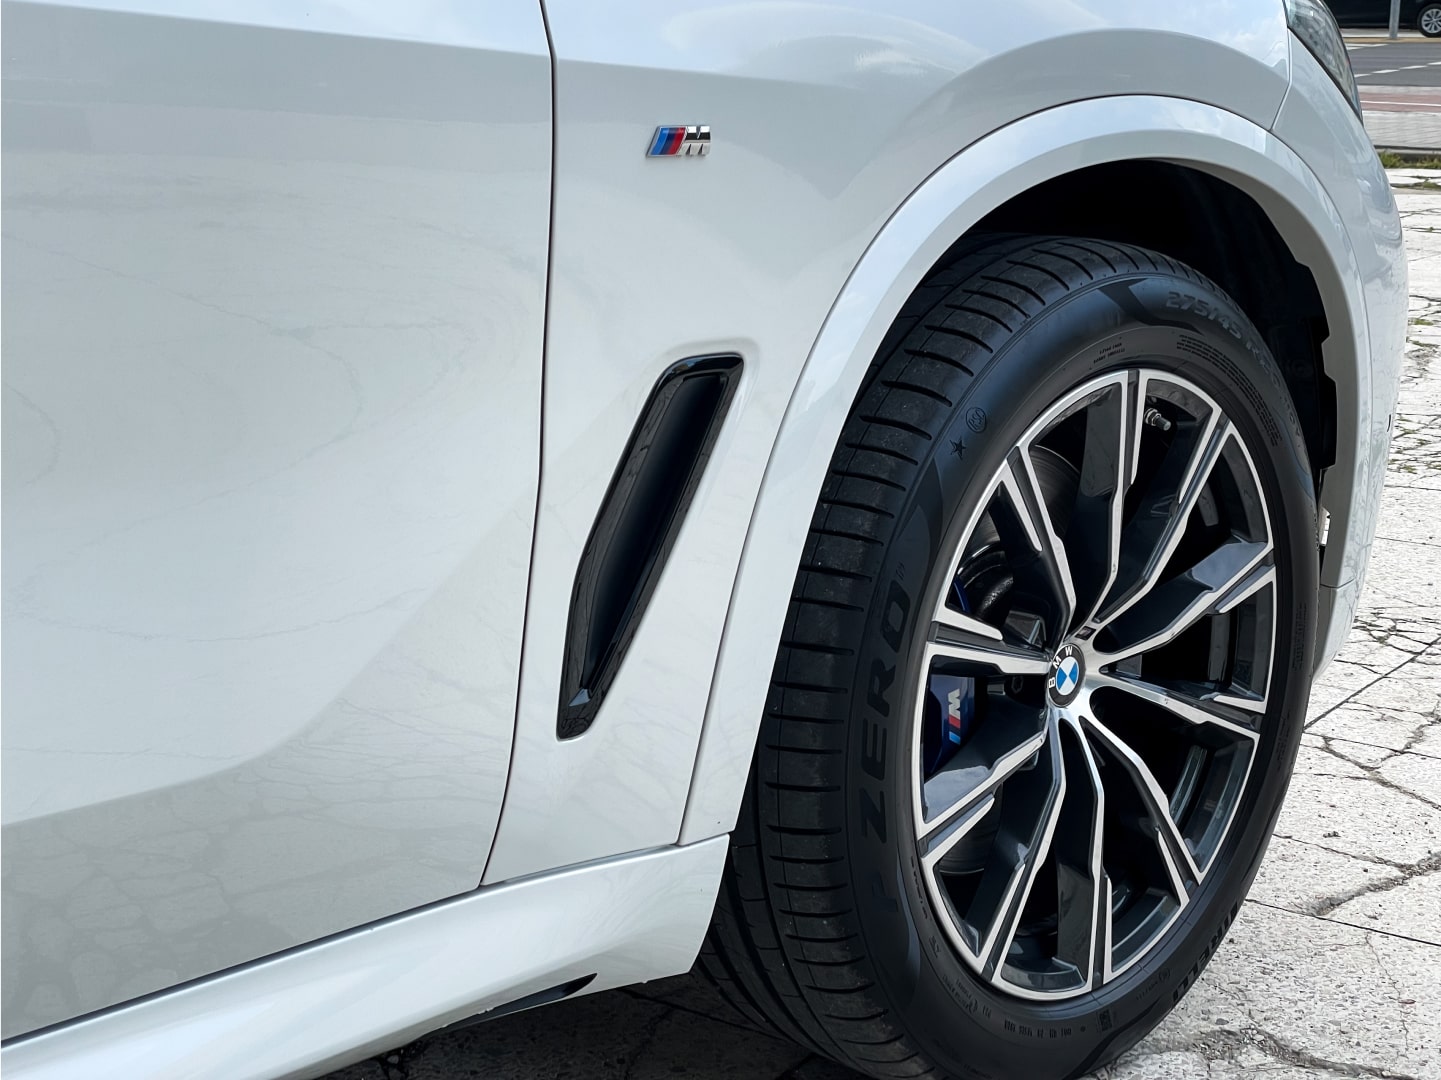 Аренда  BMW X5 G05 xDrive 30d AT M Sport  6 класса 2020 года в городе Минск от 254 $/сутки,  двигатель: ДТ , объем 3.0 литров, КАСКО (Мультидрайв), без водителя, вид 8 - West Group